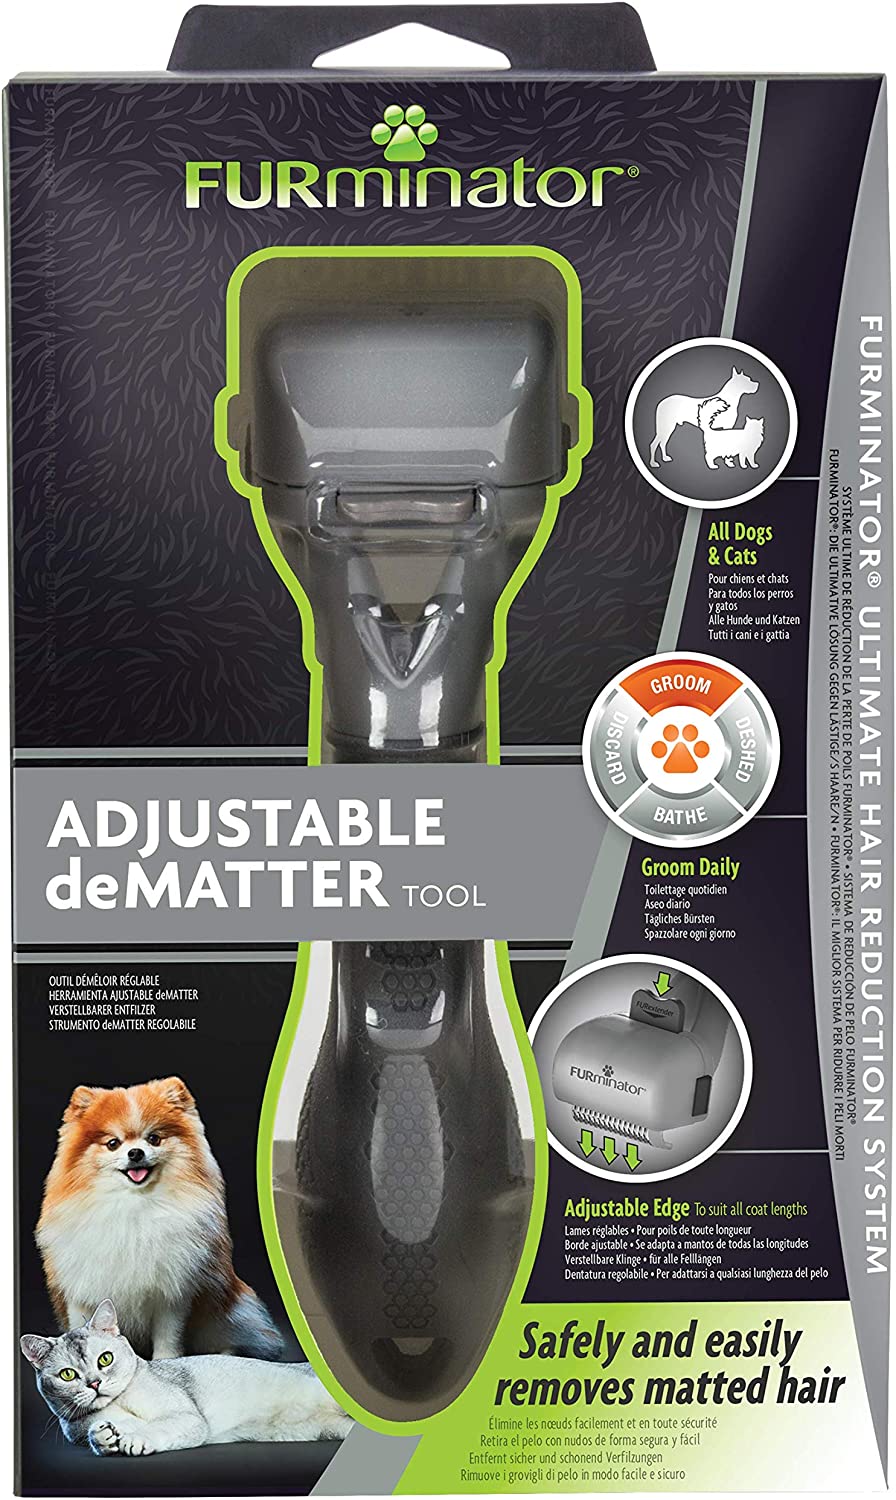  FURminator® Herramienta ajustable Dematter para perros y gatos 